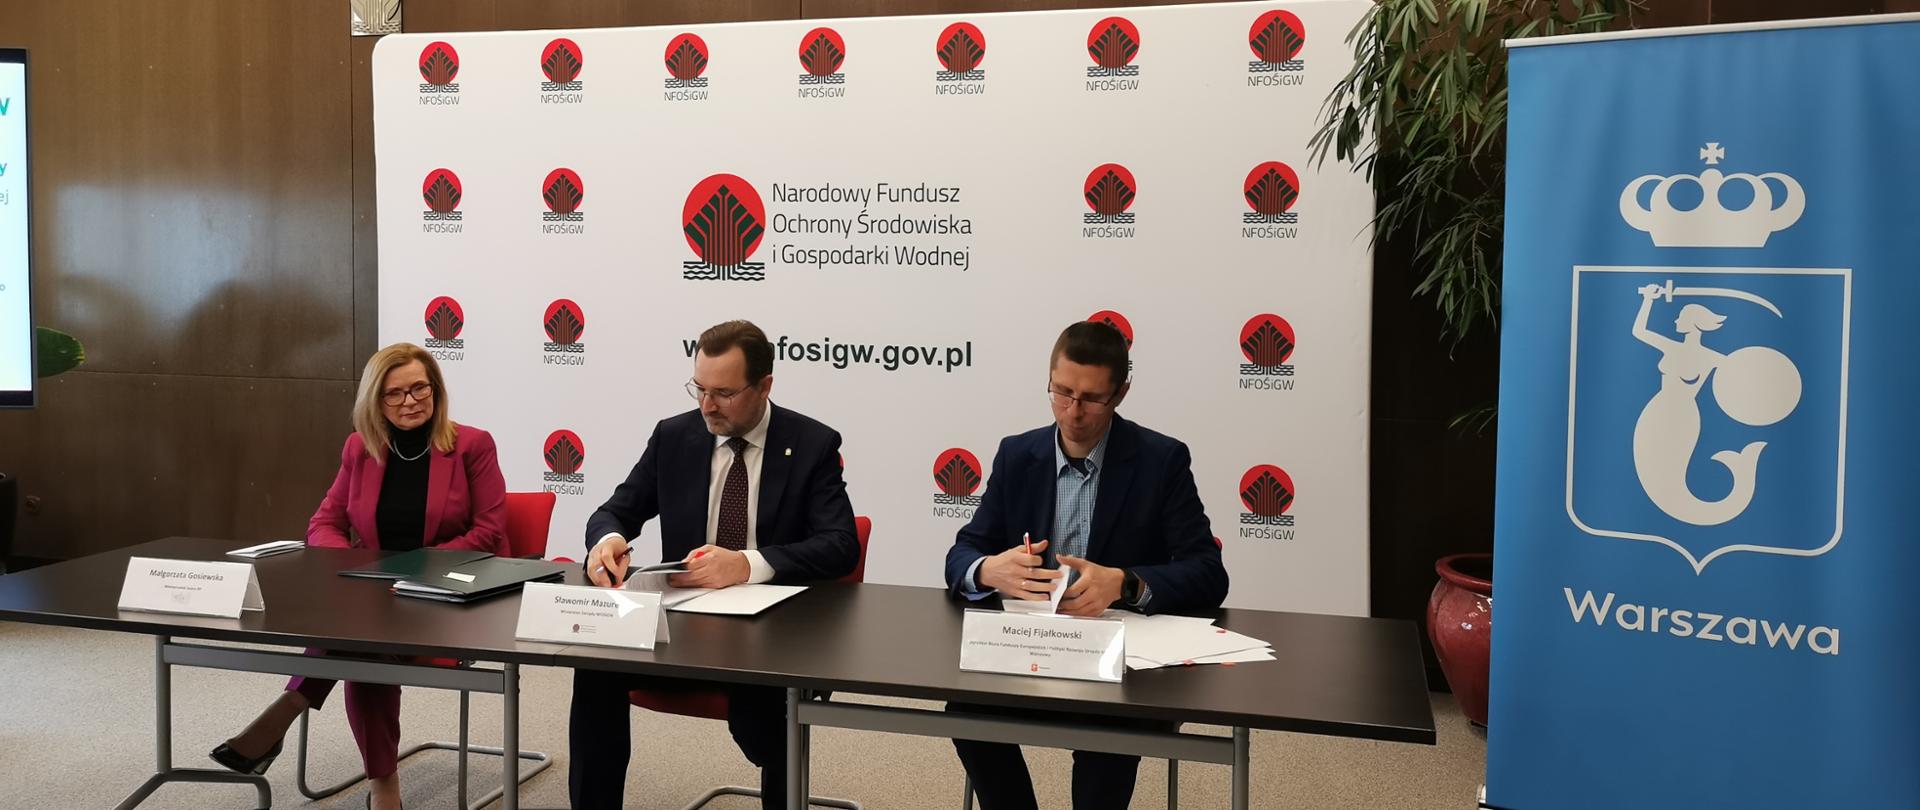 Podpisanie umowy na termomodernizację szkół w Warszawie